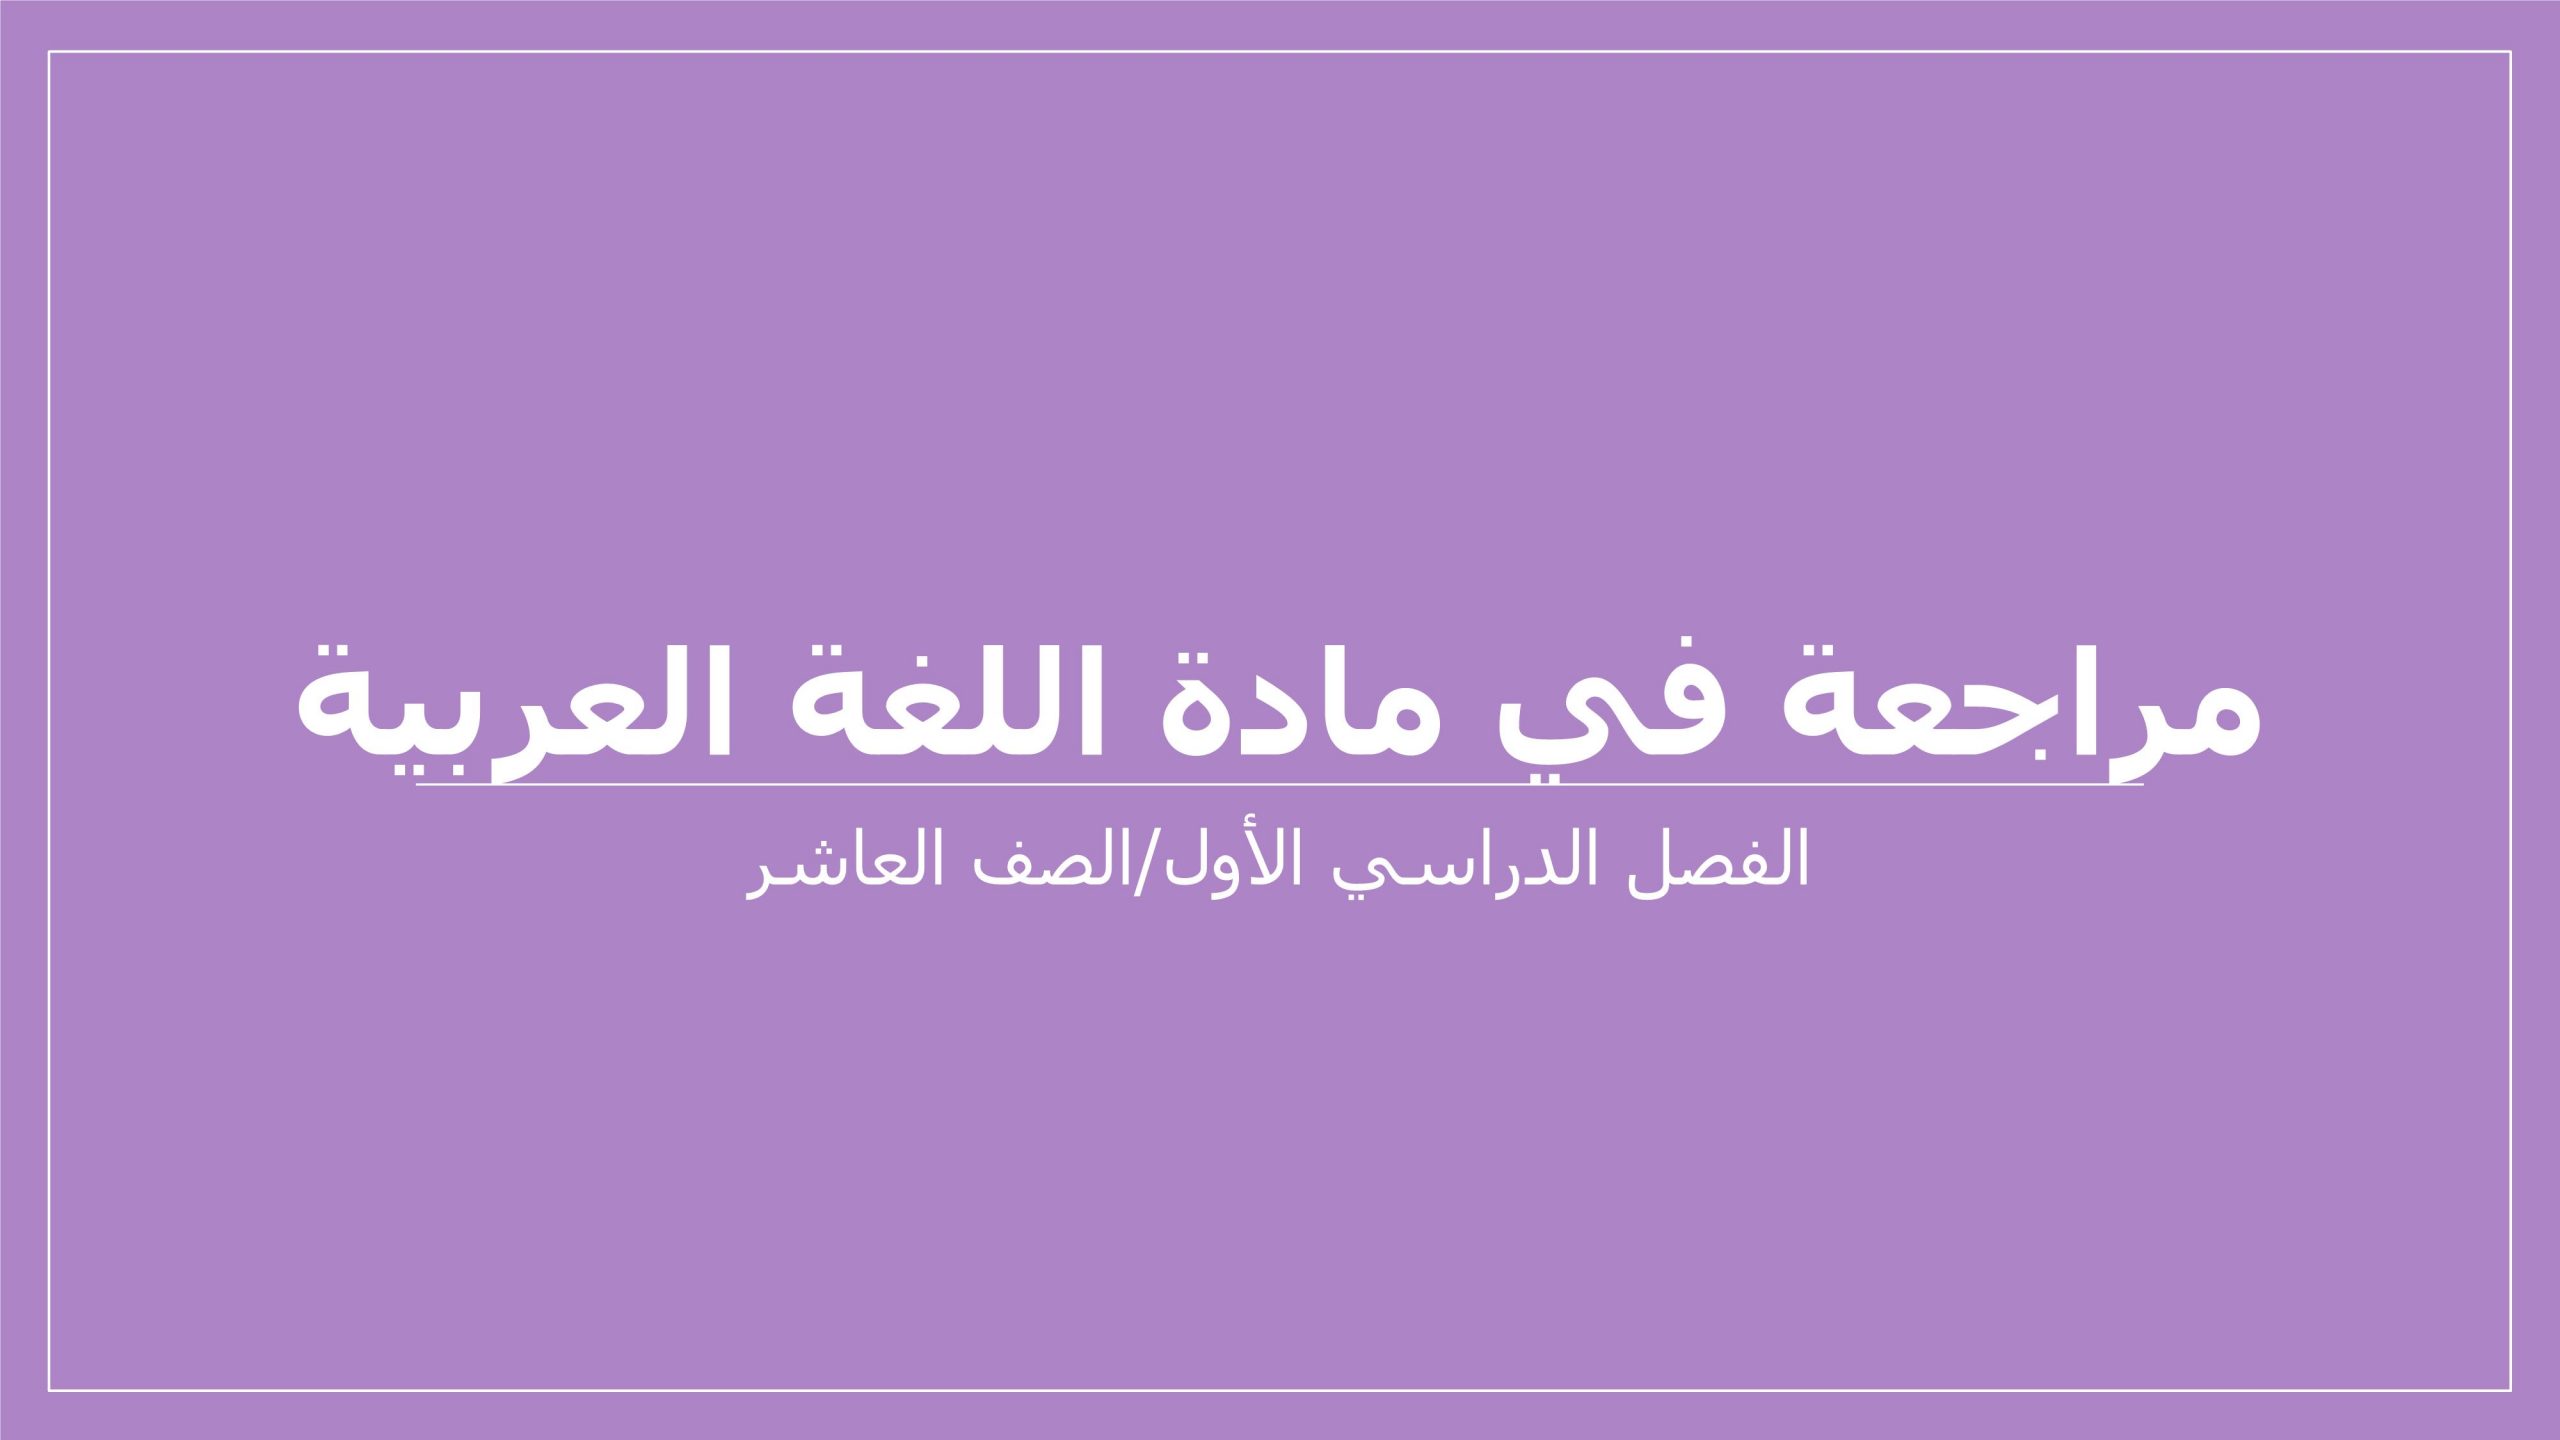 مراجعة عامة مهارات نحوية الصف العاشر مادة اللغة العربية 